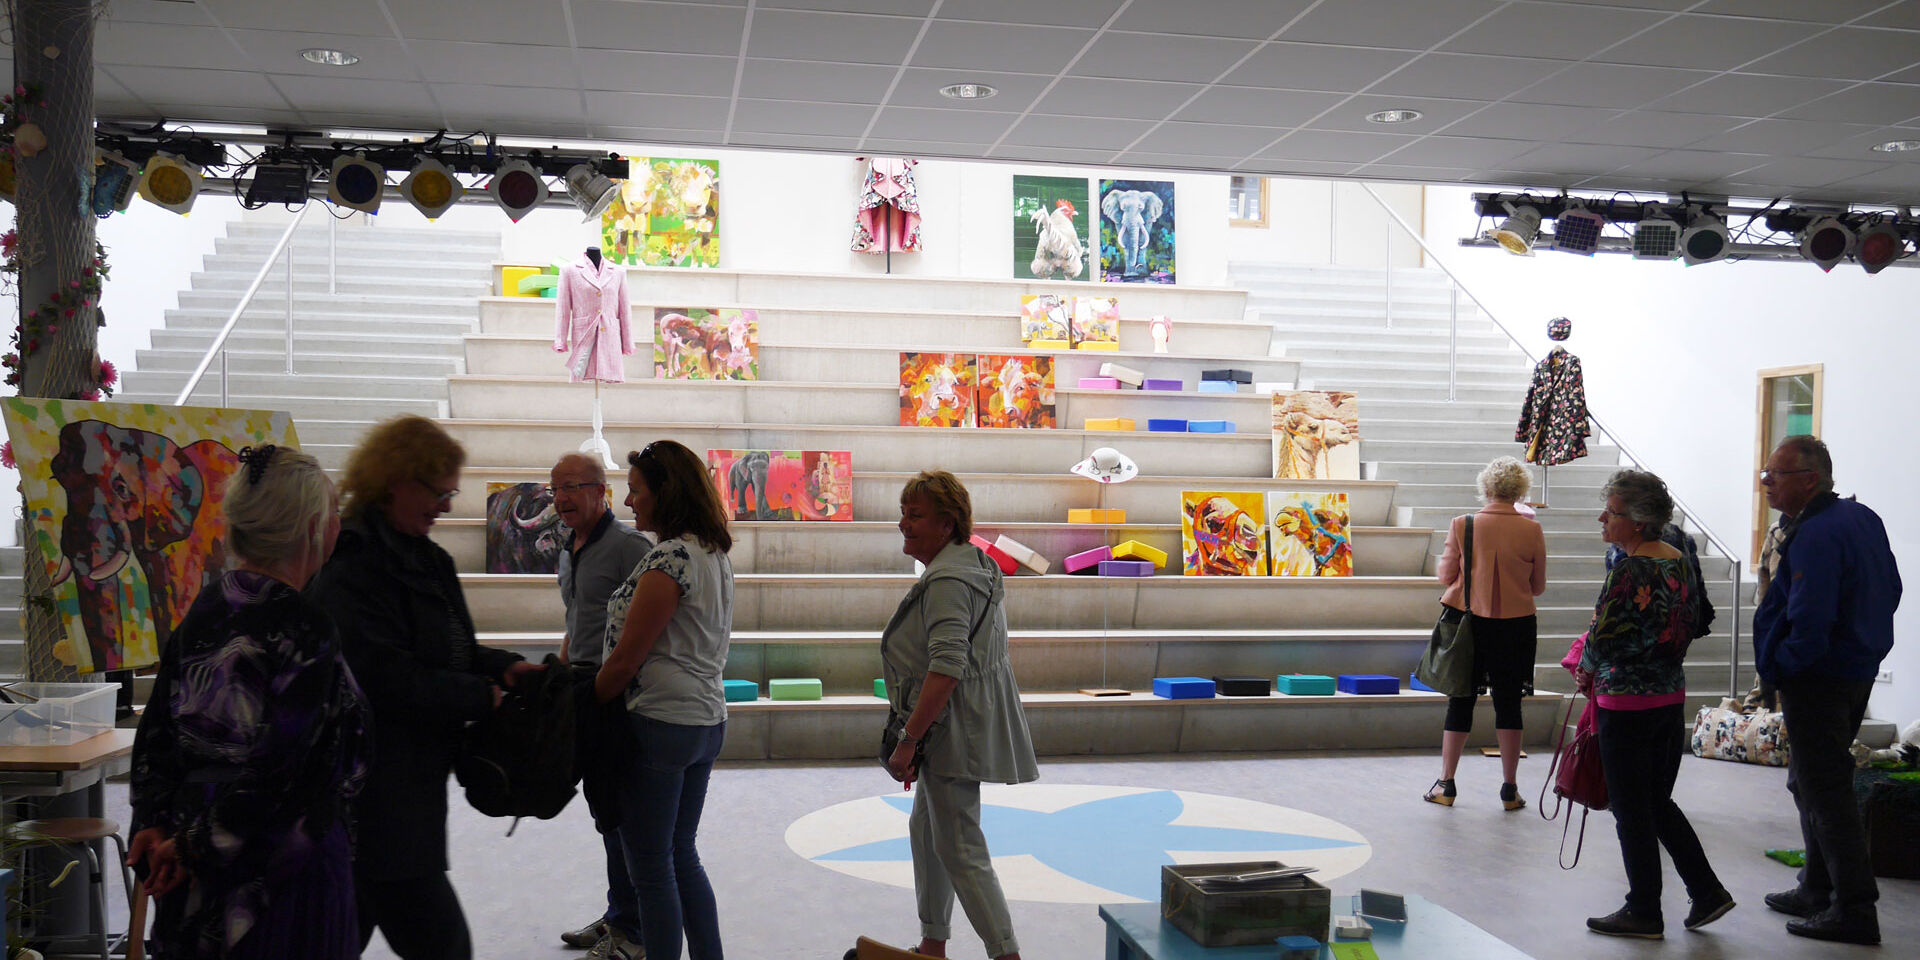 Groep mensen die kijken naar een expositie van schilderijen tijdens de Open Atelierroute in het Westland